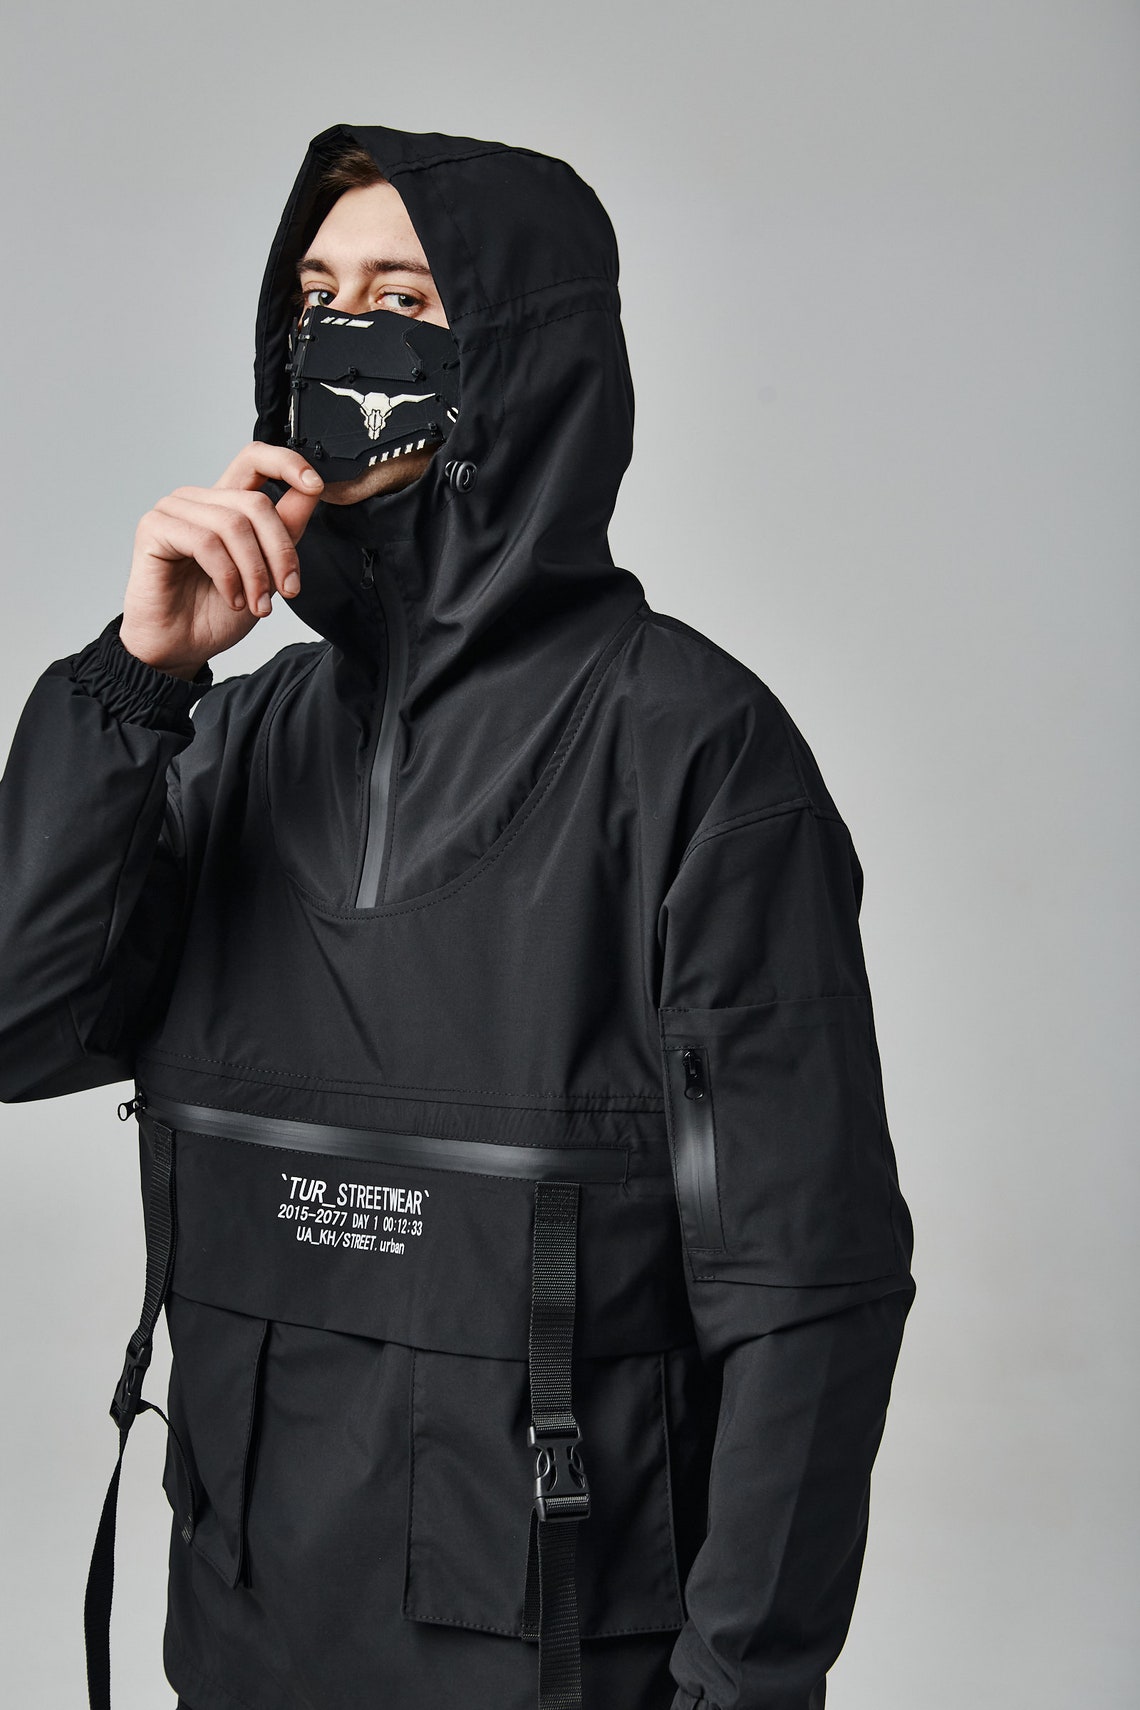 Black Jacket Techwear Cybergoth Gothic Jacket Monogram - Etsy